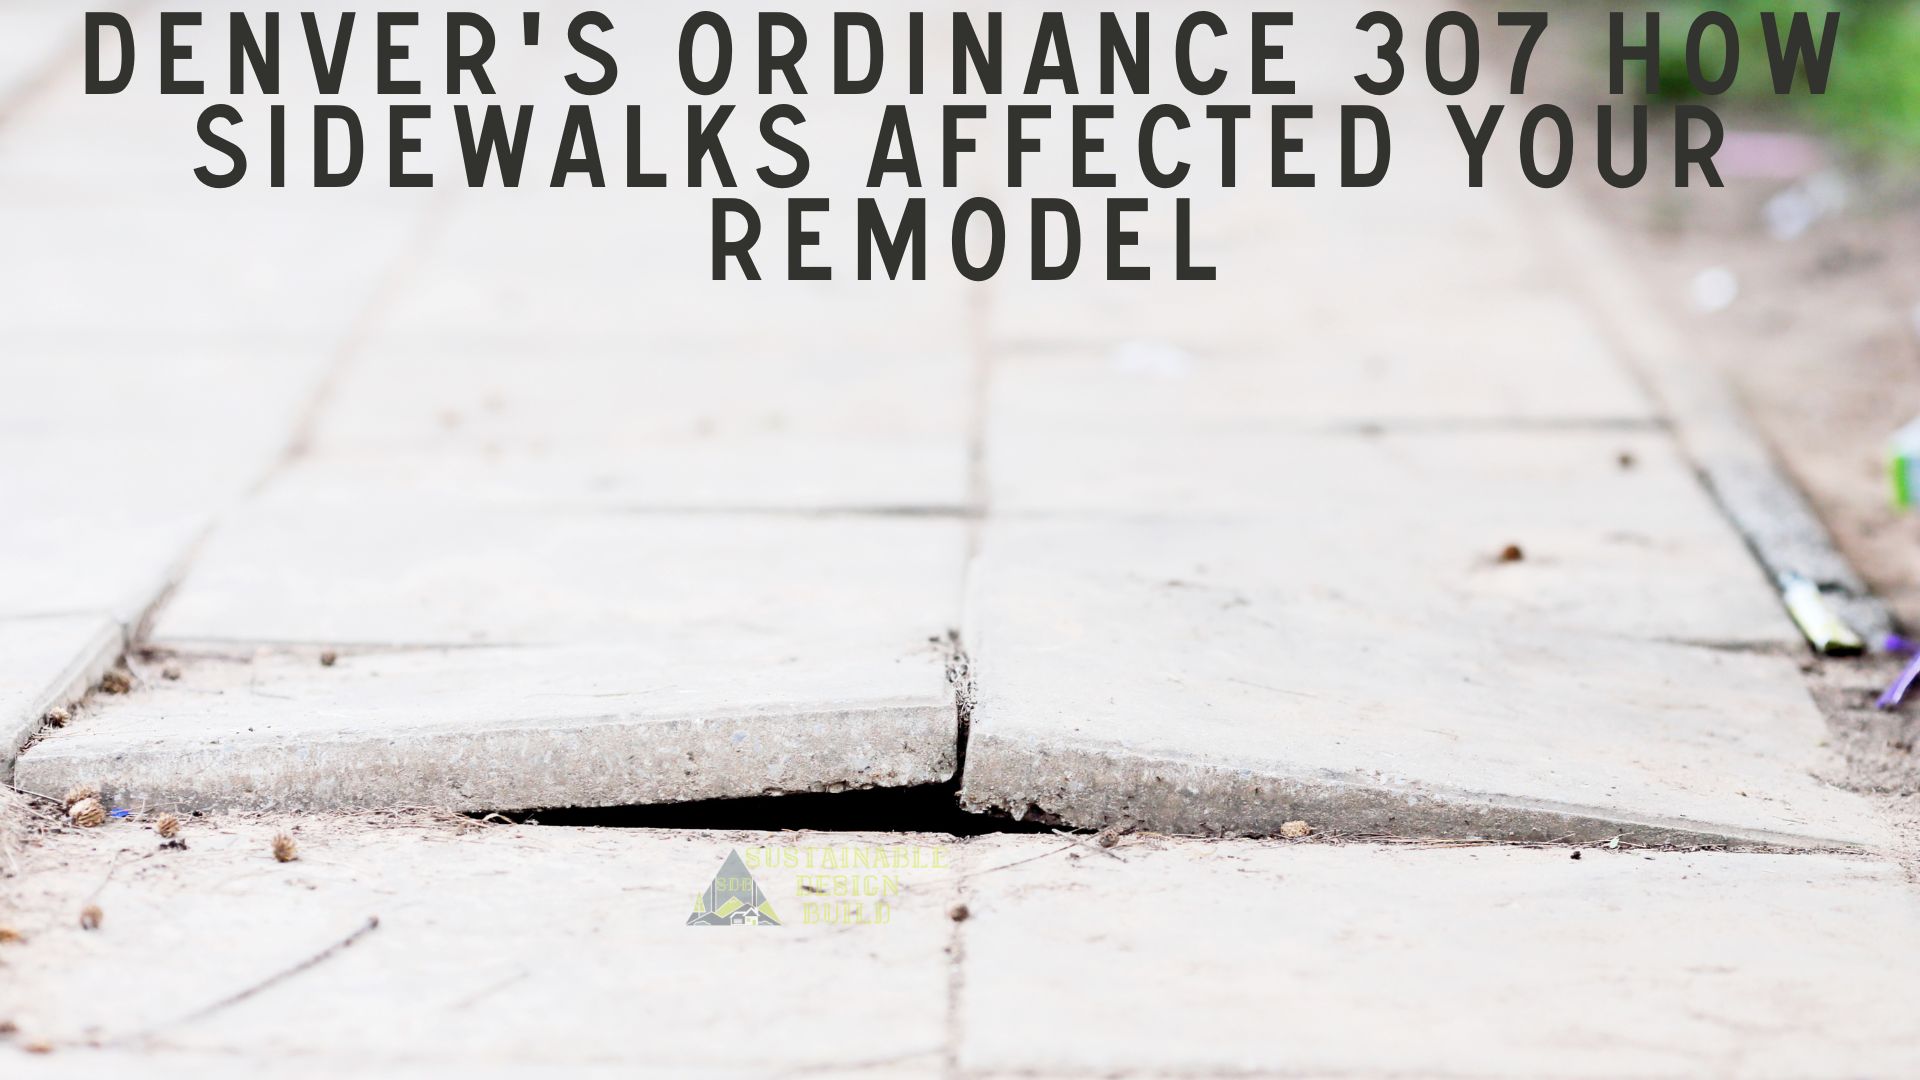 Denver's Ordinance 307 How Sidewalks Affected Your Remodel